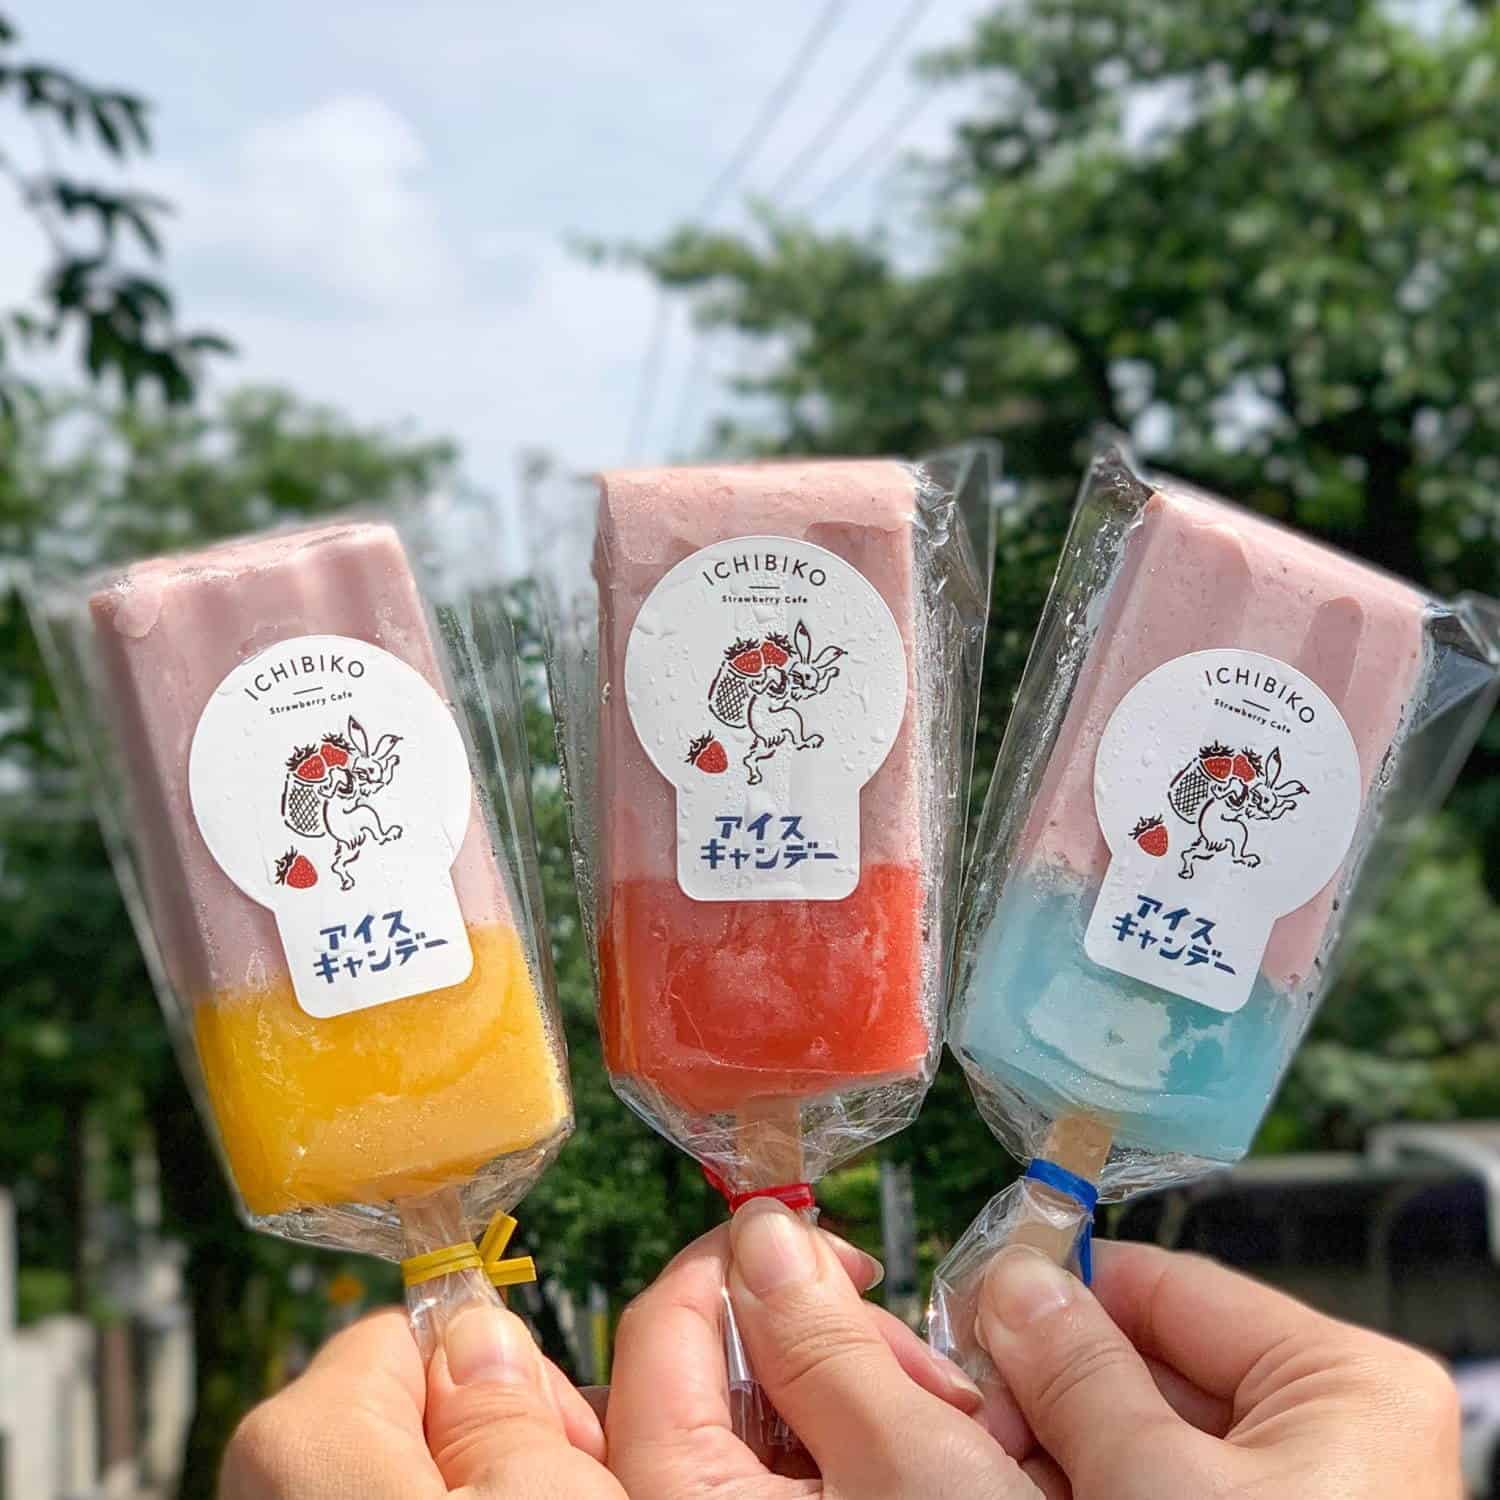 ไอศกรีมทูโทนนมสตรอว์เบอร์รีเข้มข้น สินค้าใหม่จาก ICHIBIKO Cafe เมืองยามาโตะ จ.มิยากิ